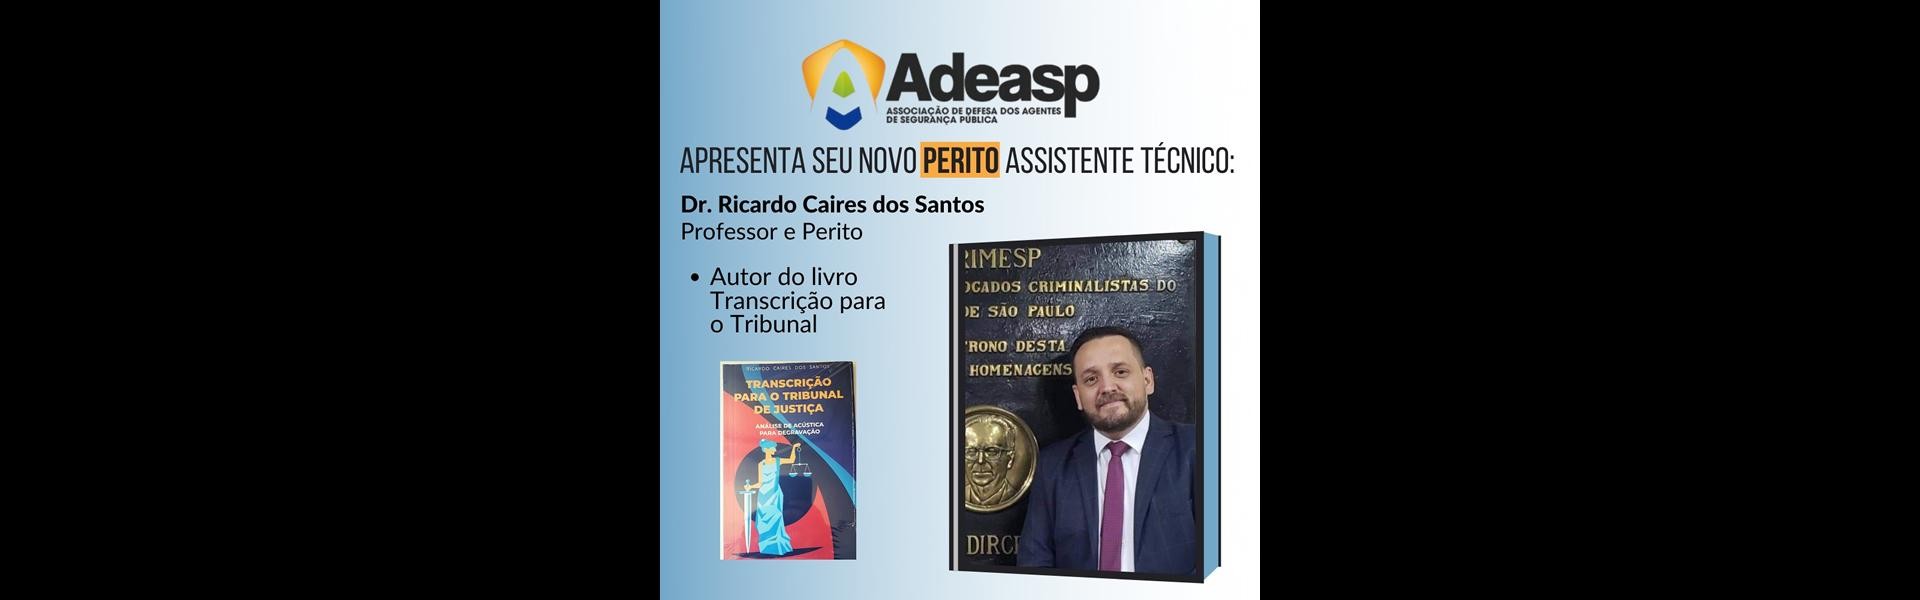 Ricardo Caires dos Santos se torna o mais novo perito assistente técnico da ADEASP